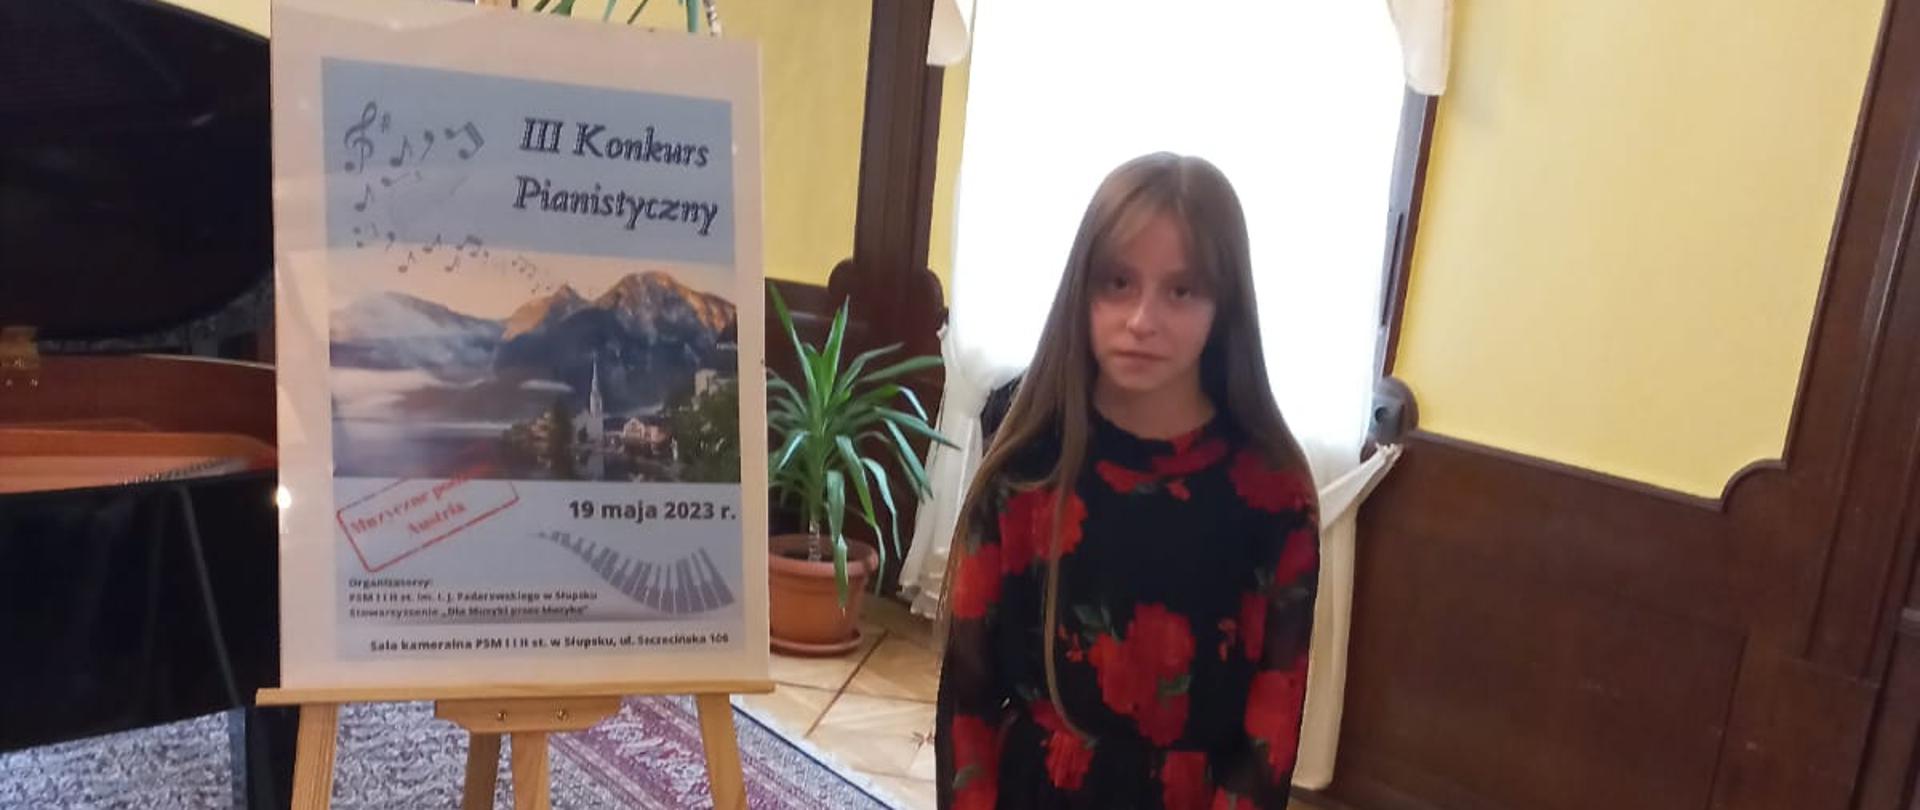 Uczennica Marta Melzacka stoi przy afiszu Konkursu Pianistycznego w Słupsku 